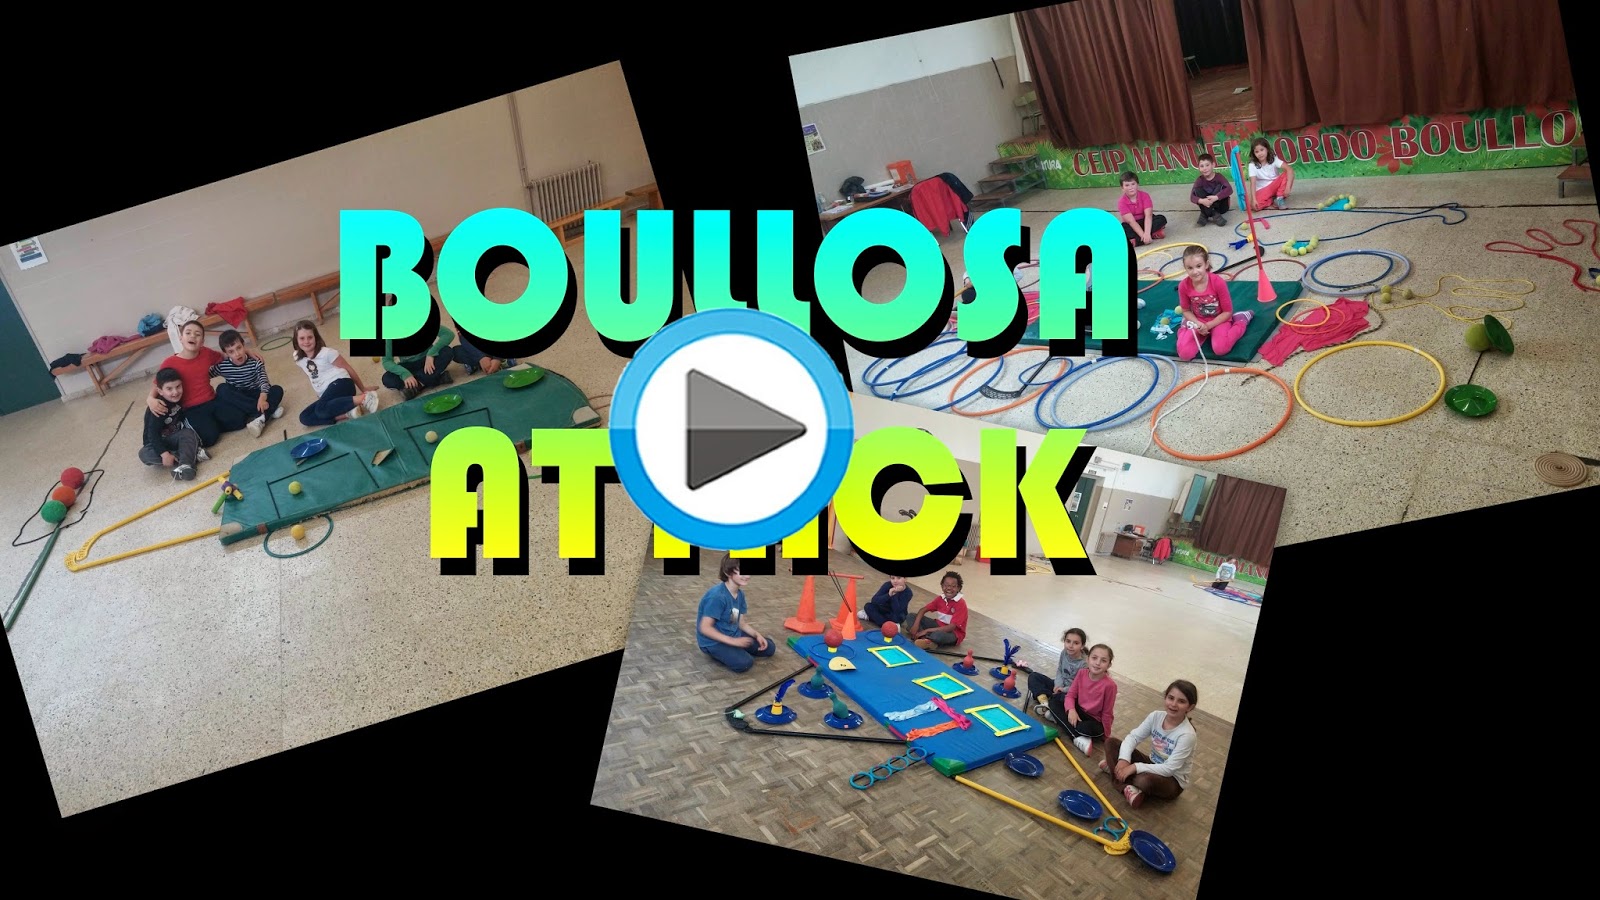  Boullosa Attack 3ºA